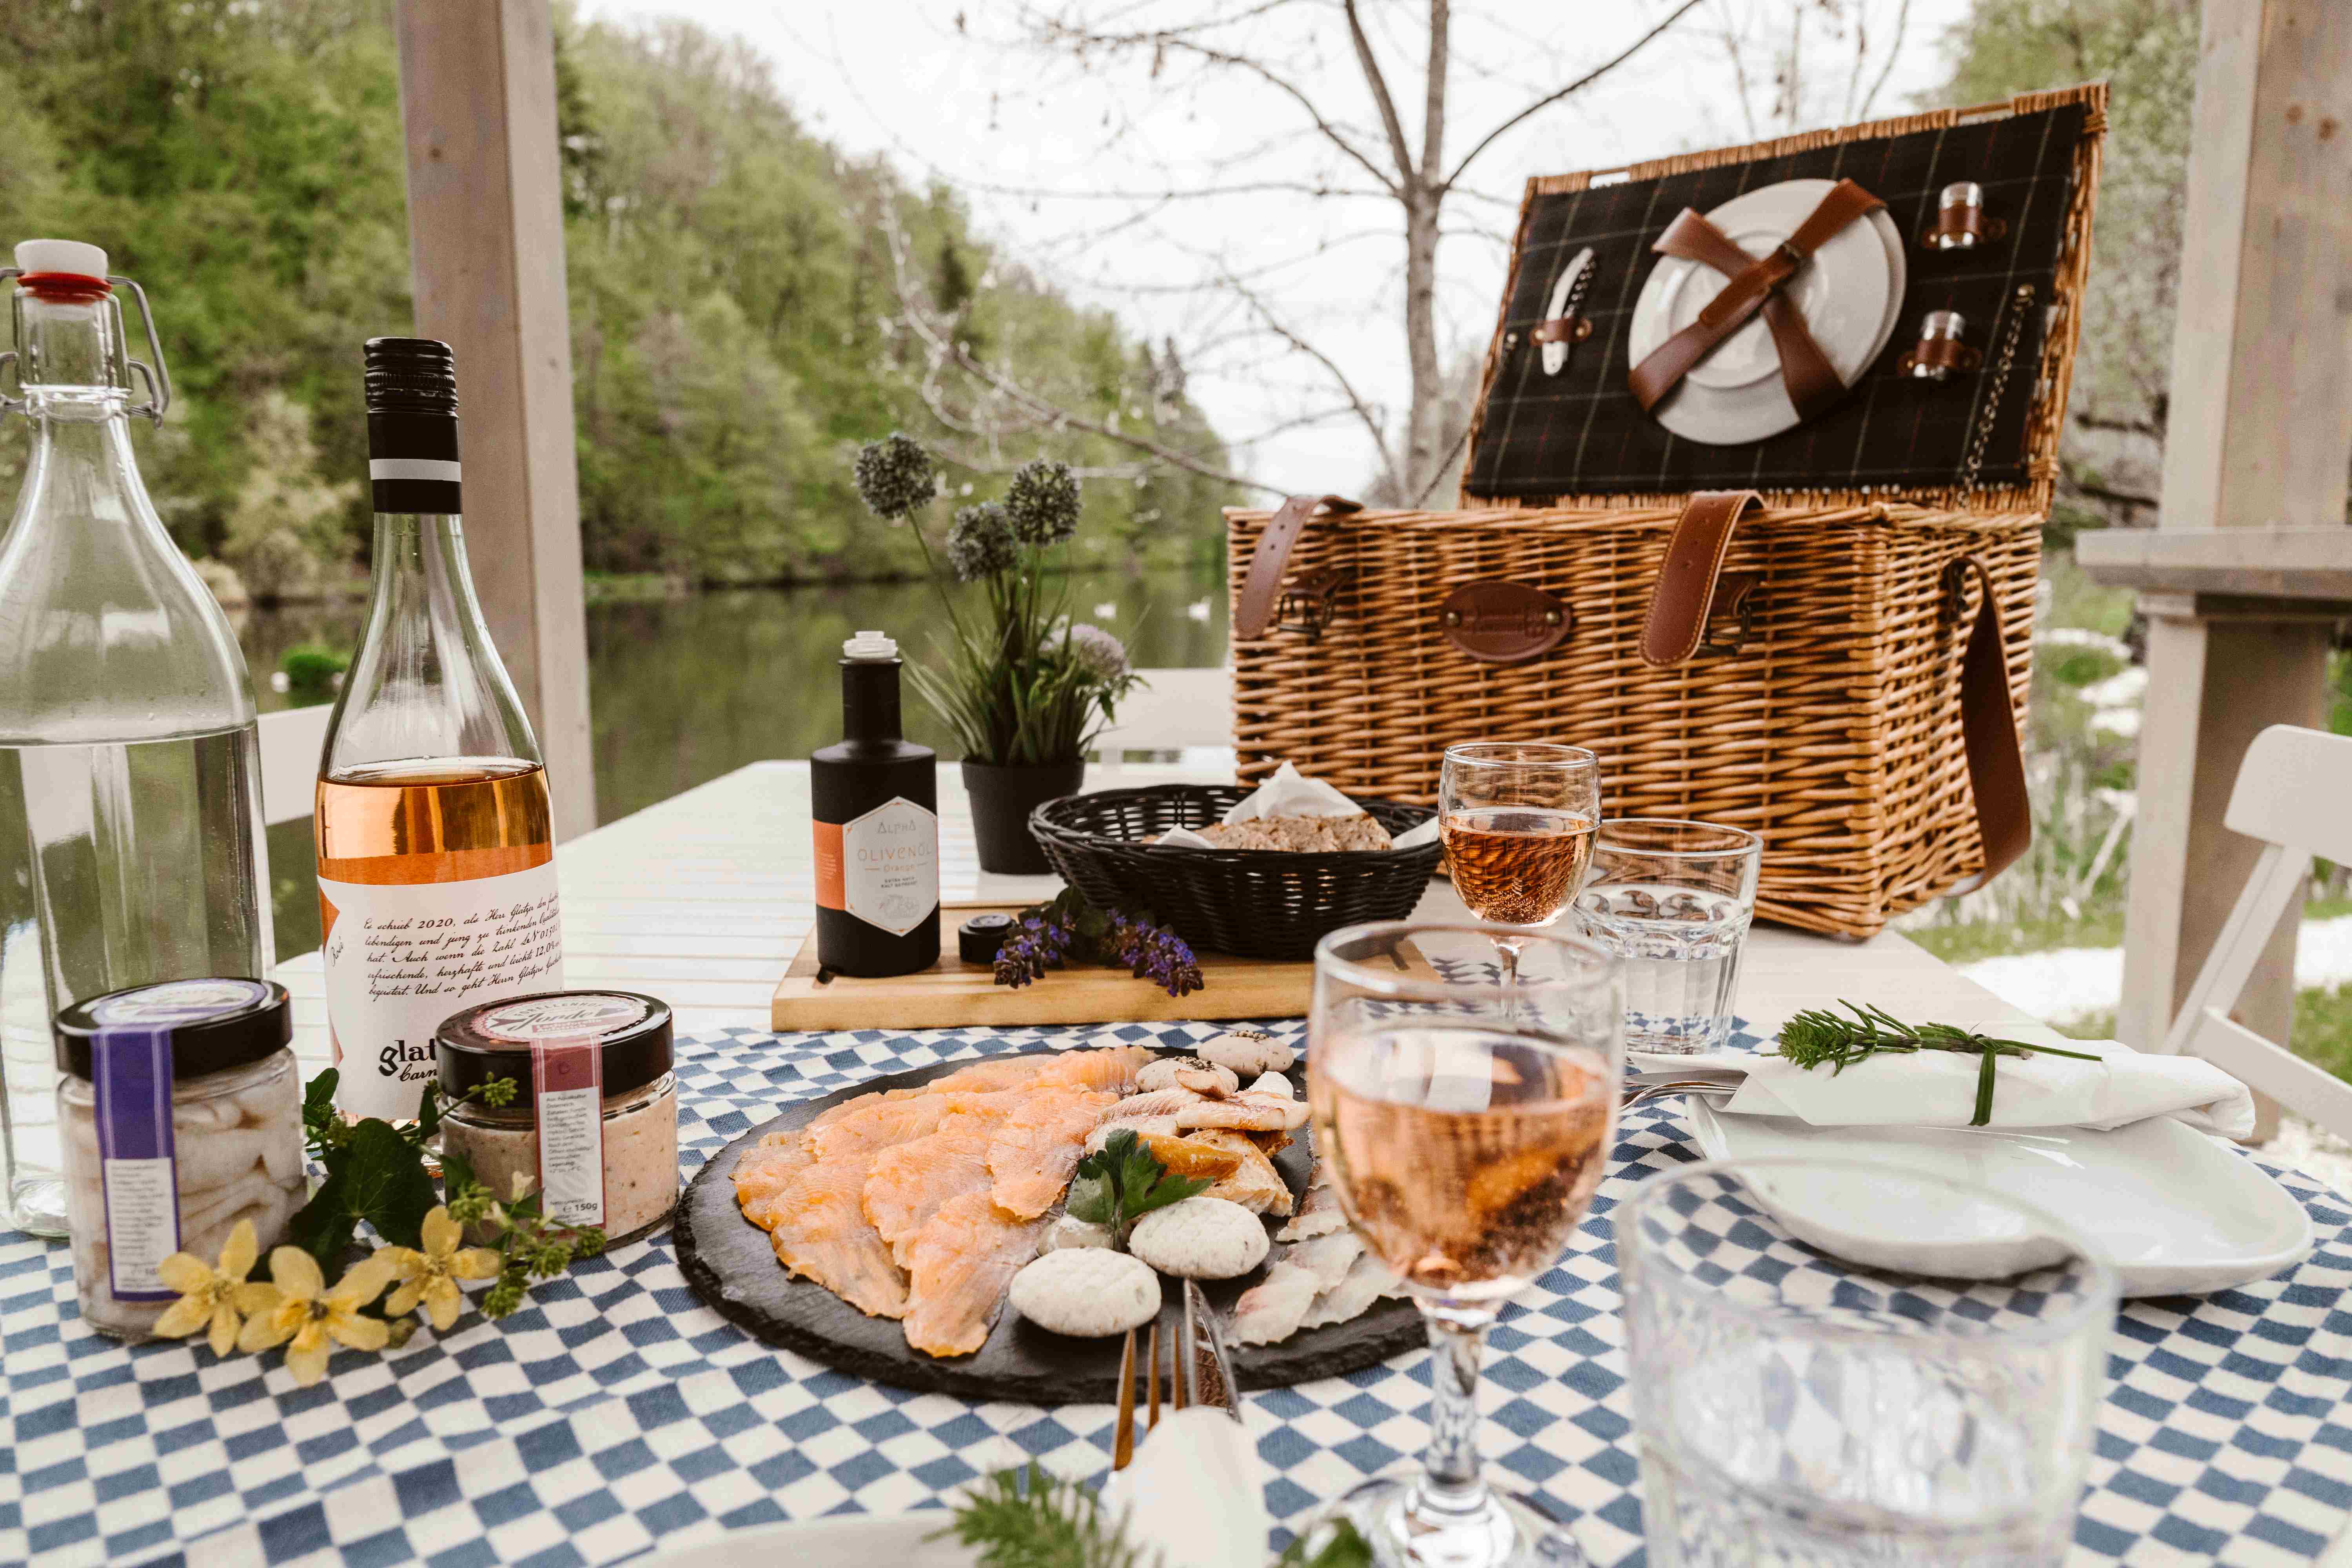 Ein Teller voller Fisch-Spezialitäten auf karierter Tischdecke mit Picknickkorb und Fischteich im Hintergrund